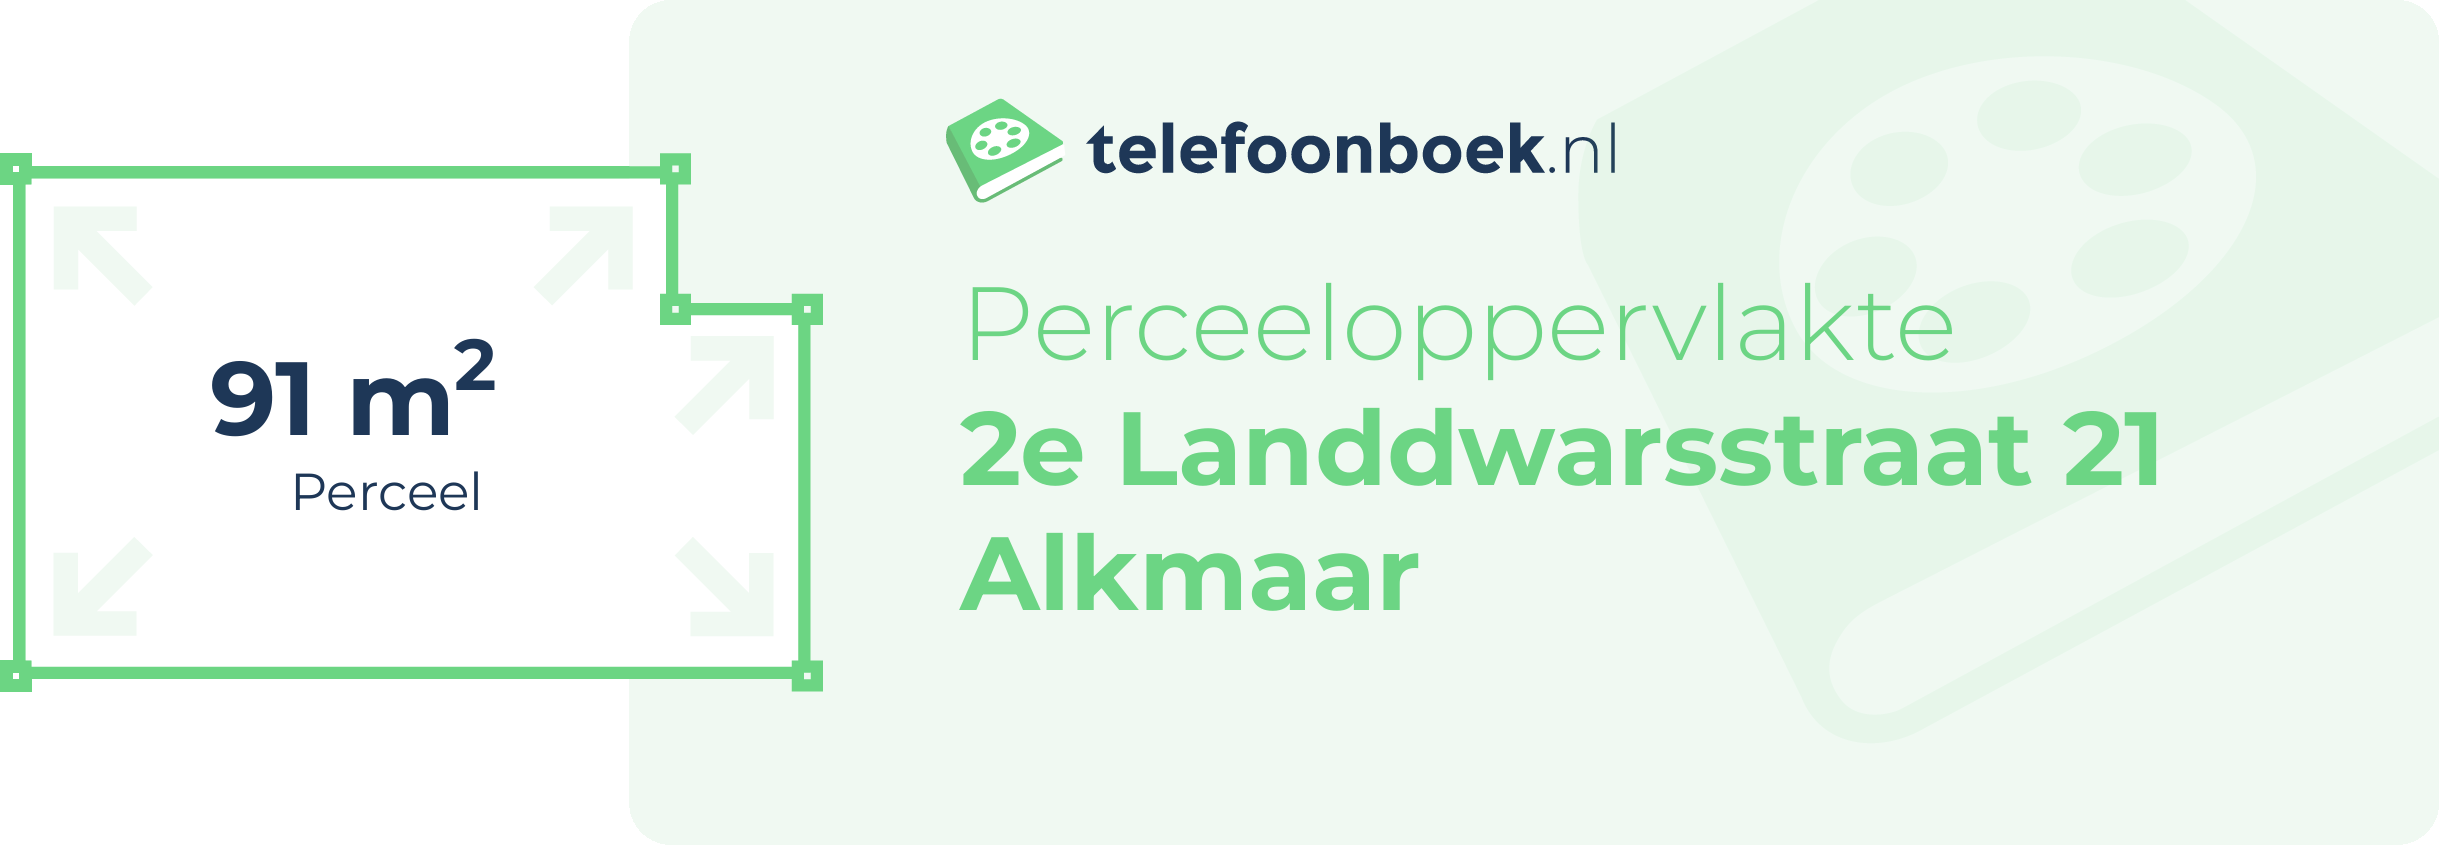 Perceeloppervlakte 2e Landdwarsstraat 21 Alkmaar